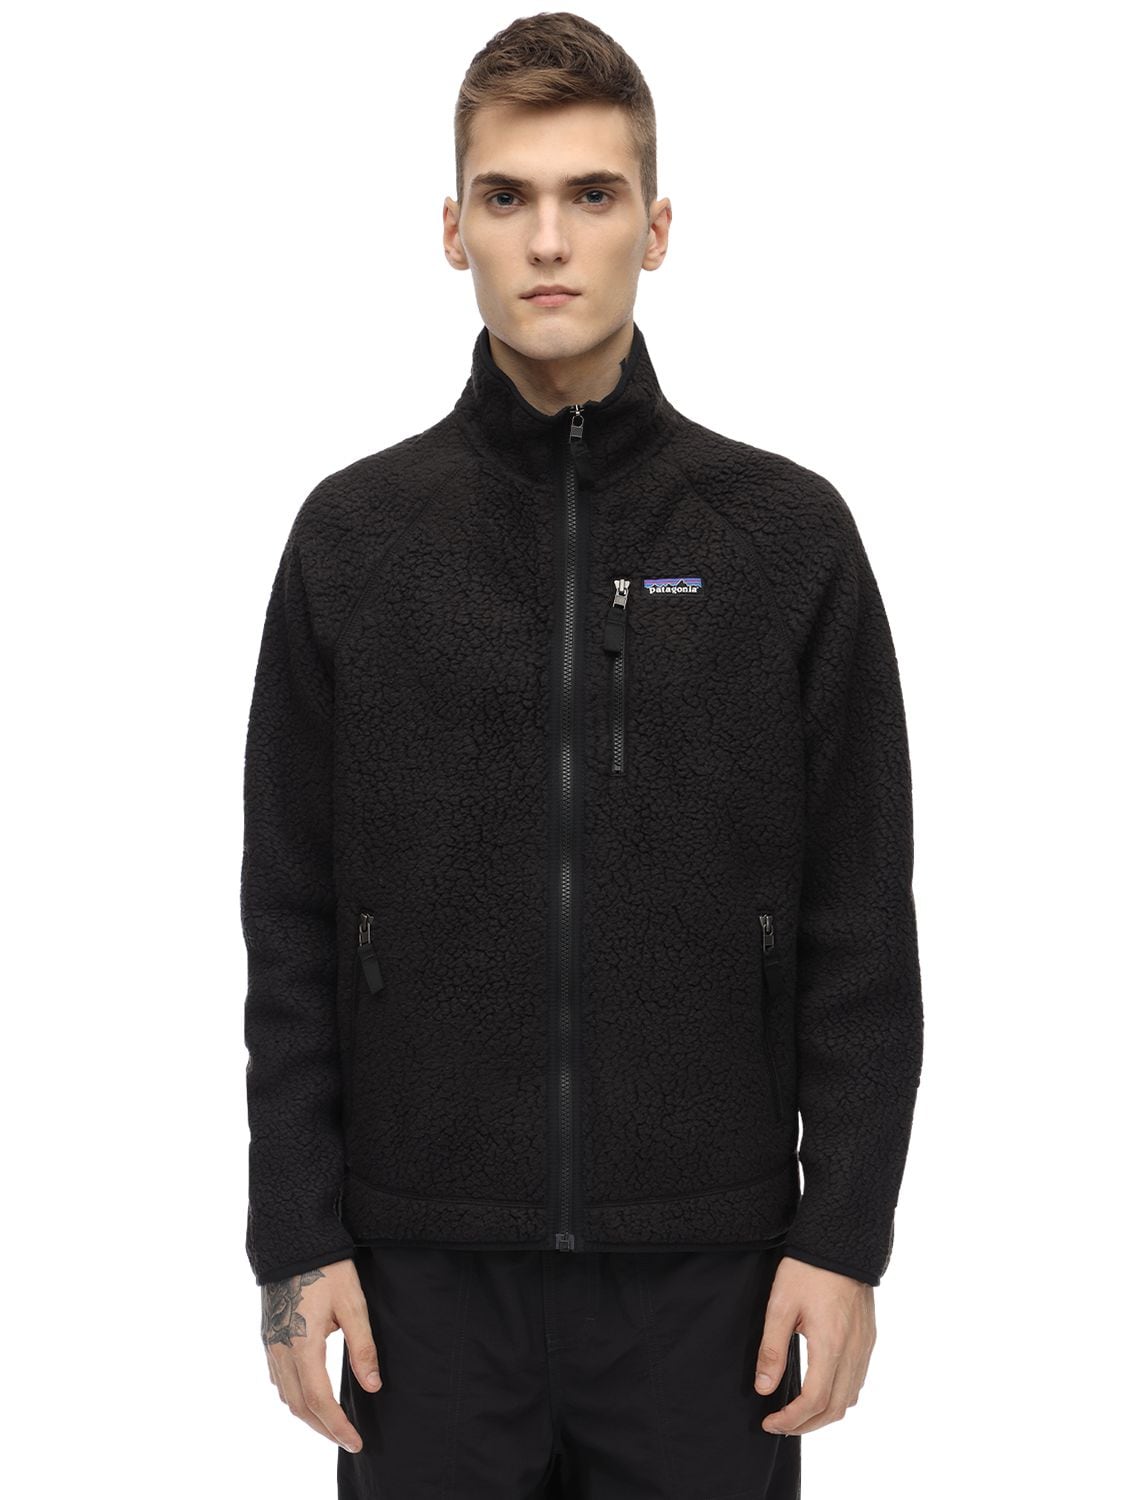 Patagonia Retro Fleece Jacket In Black